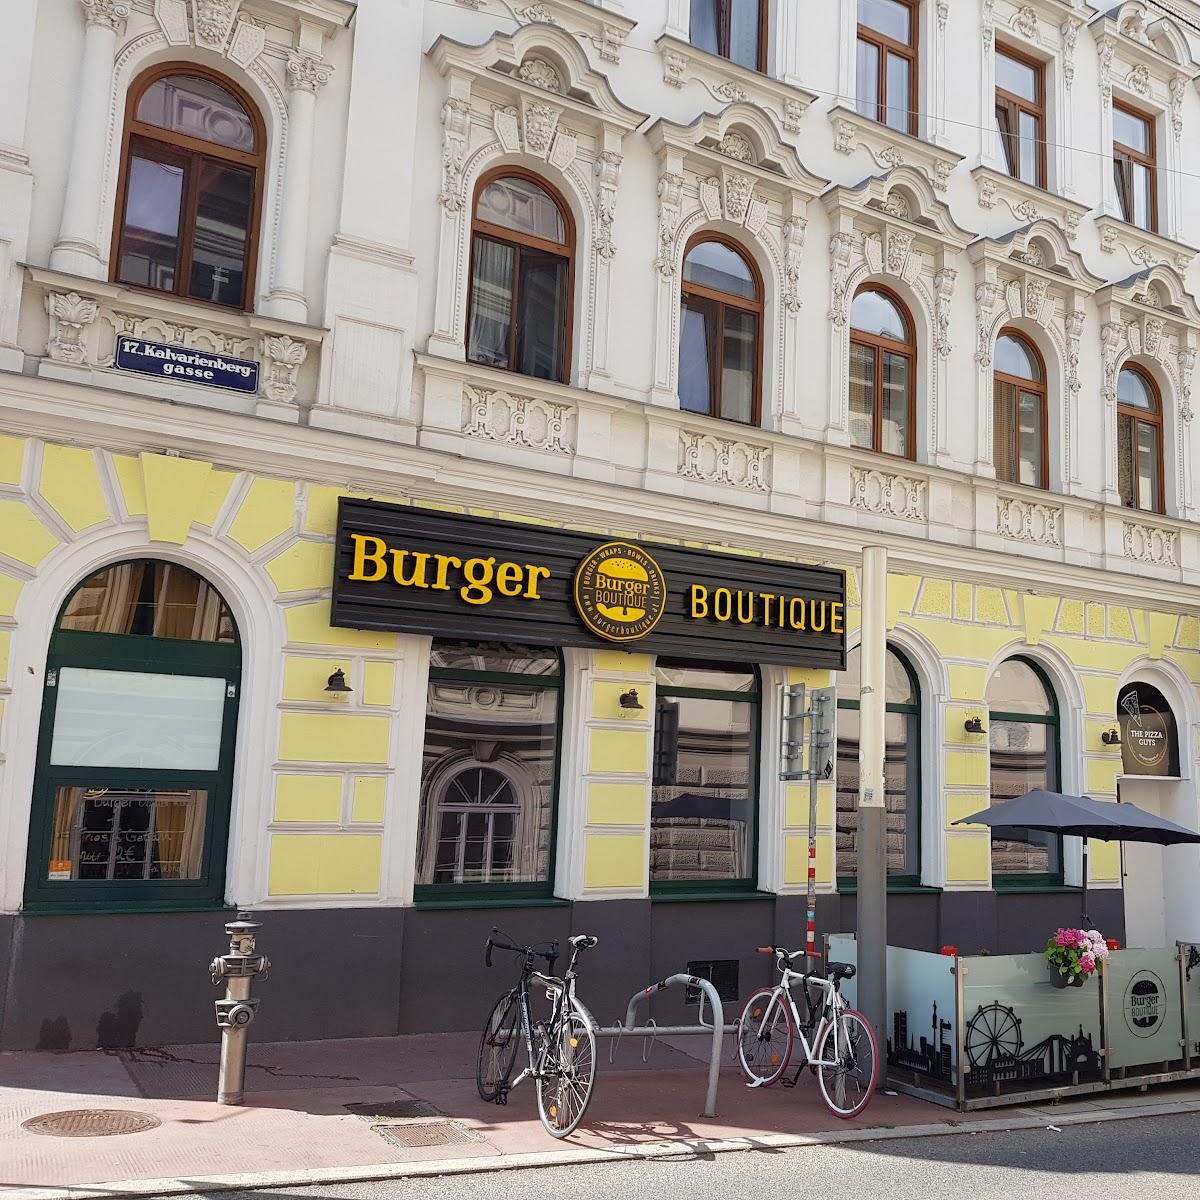 Restaurant "Burger Boutique 17" in Wien